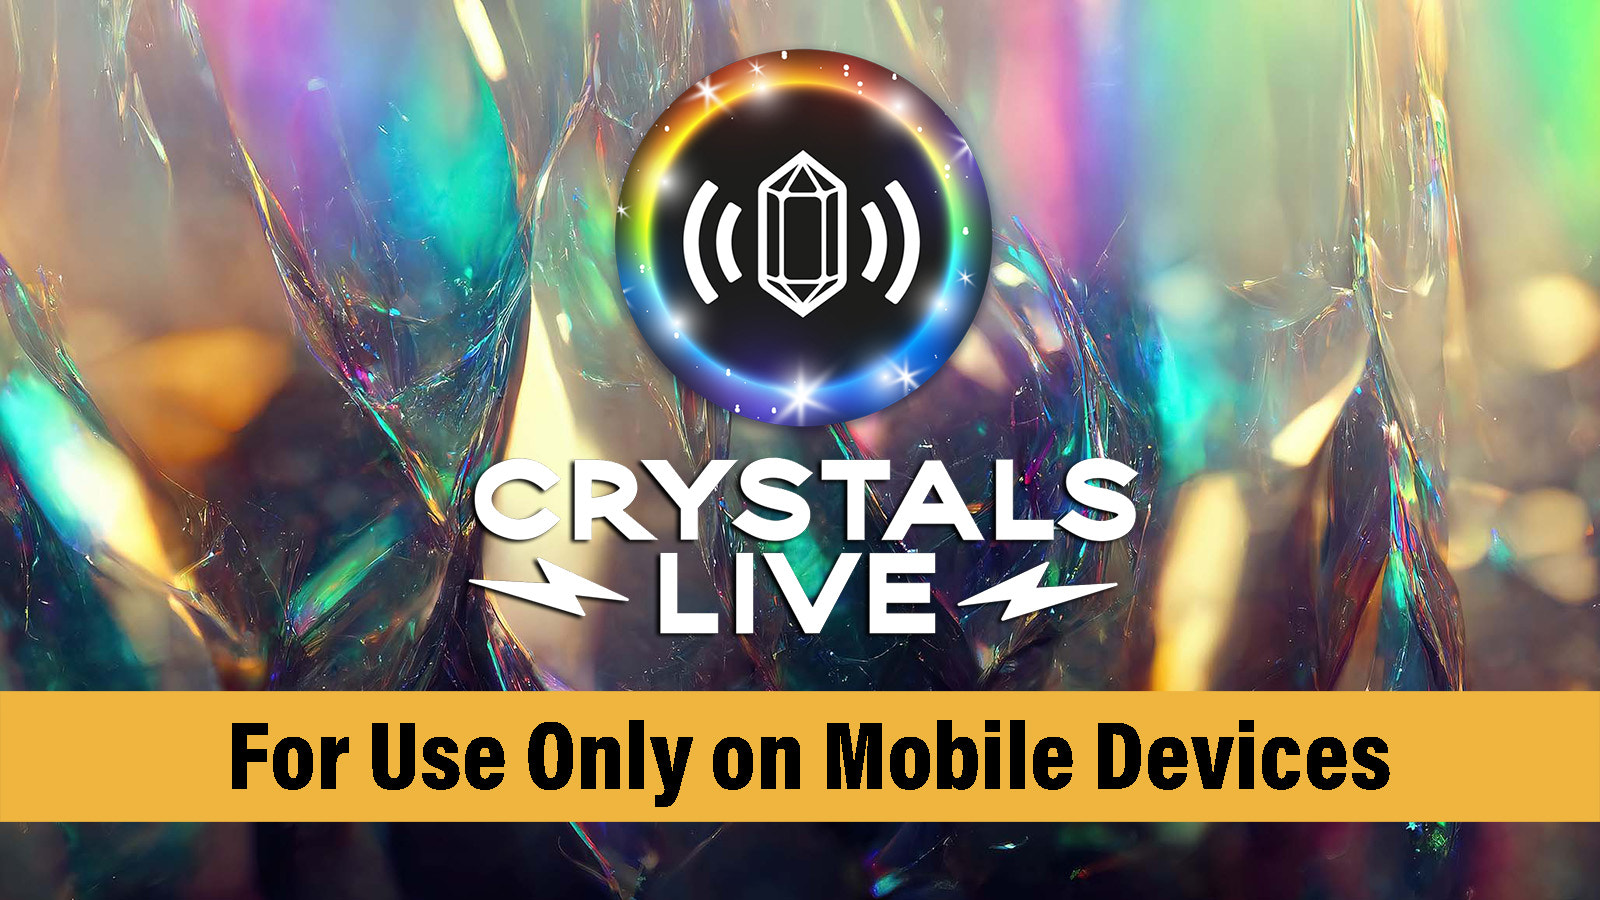 Crystals Live er en Mobil Kun App